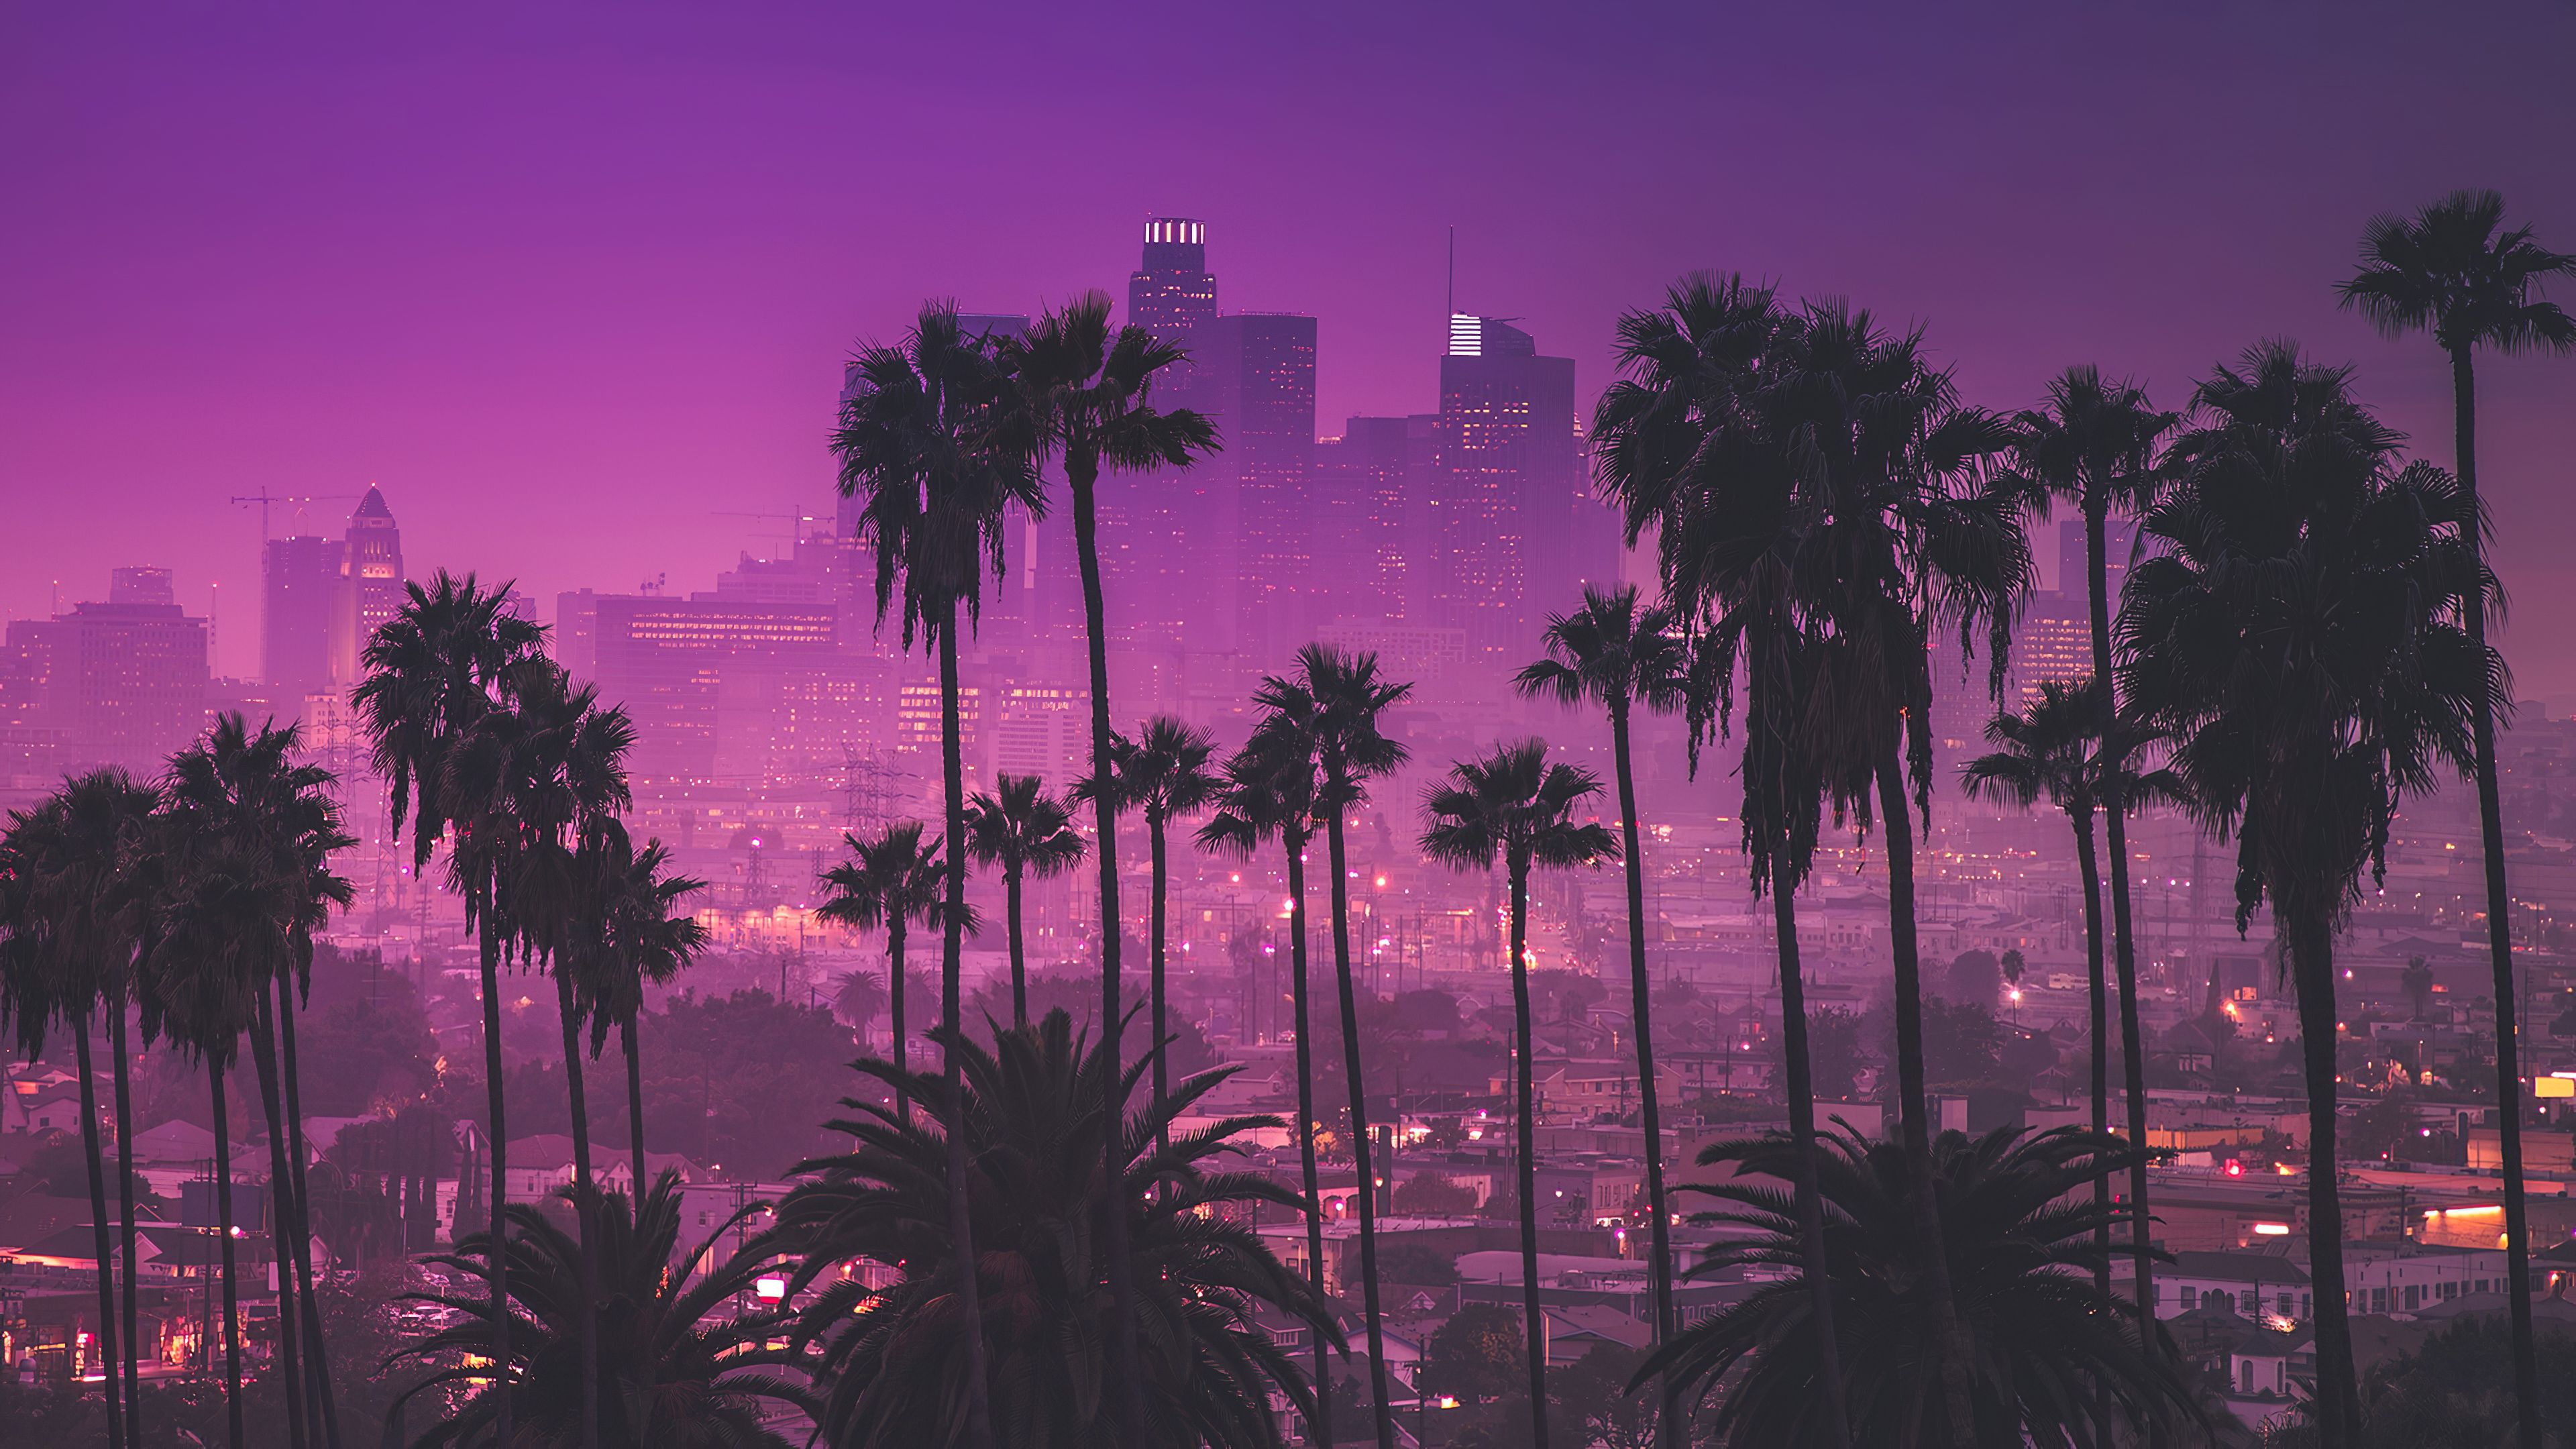 جذابترین عکس از منظره صورتی انواع درختان کوکوس و دم روباهی در شهر لس آنجلس